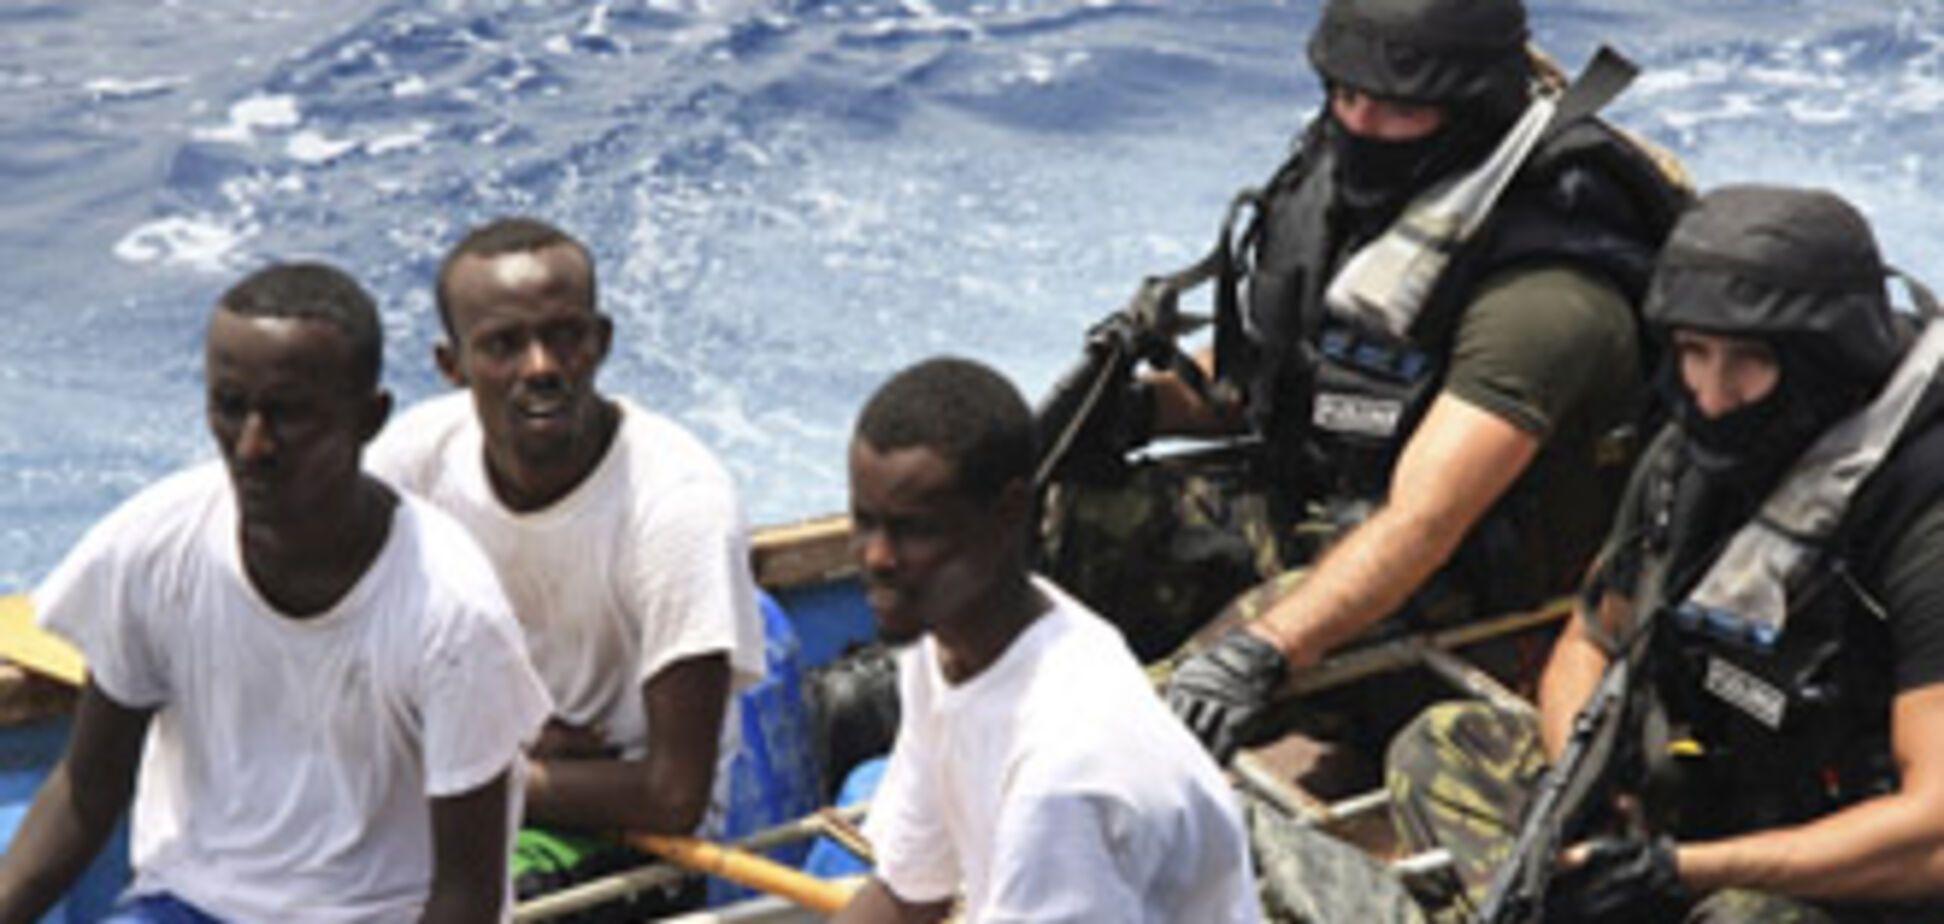 Сомалийские пираты захватили первое в 2010 году судно